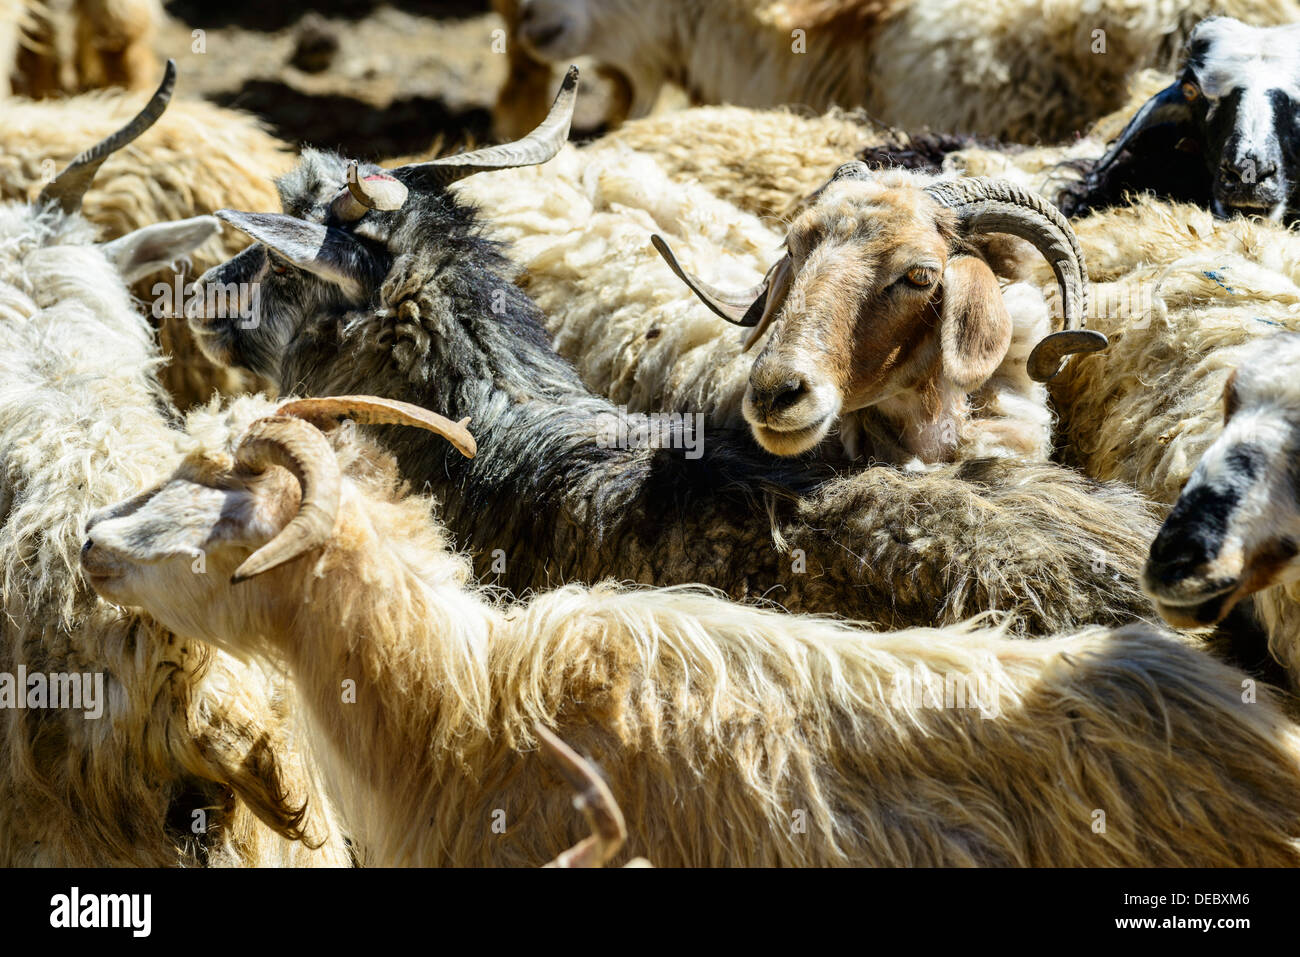 Rebaño de ovejas, cercado por un muro de piedra, a la espera de la esquila, Korzok, Ladakh, Jammu y Cachemira, la India Foto de stock